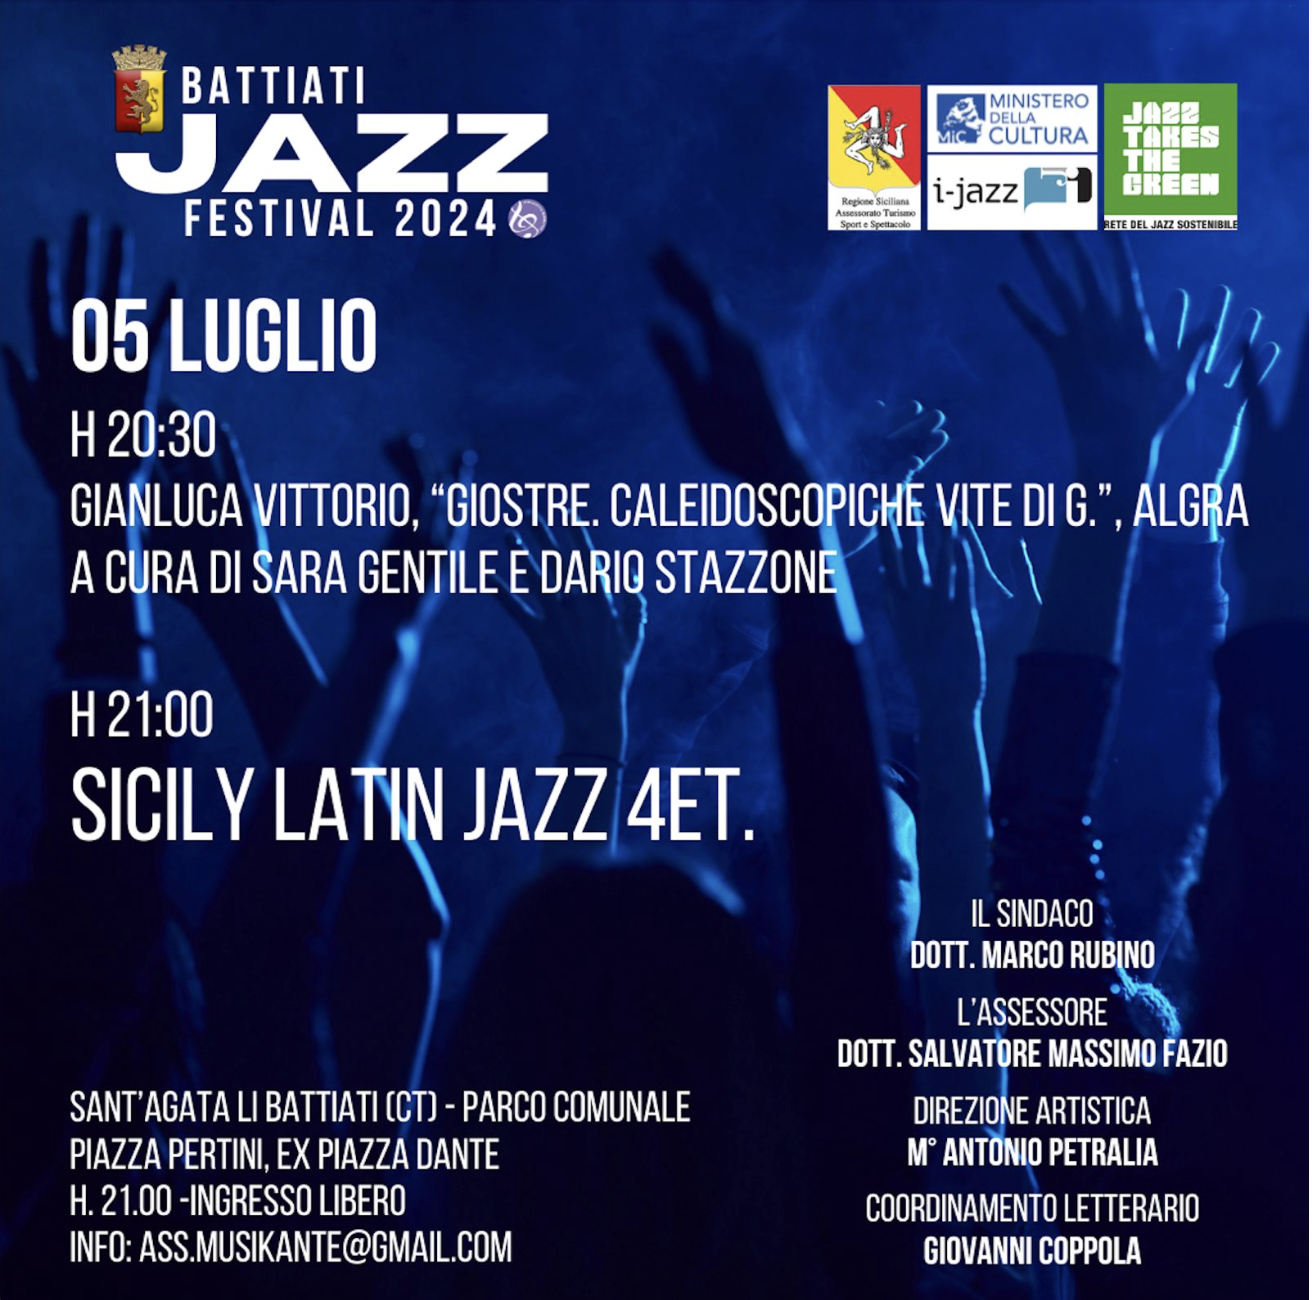 SMF su La Sicilia – Il jazz come “traino” per una kermesse culturale aperta e inclusiva